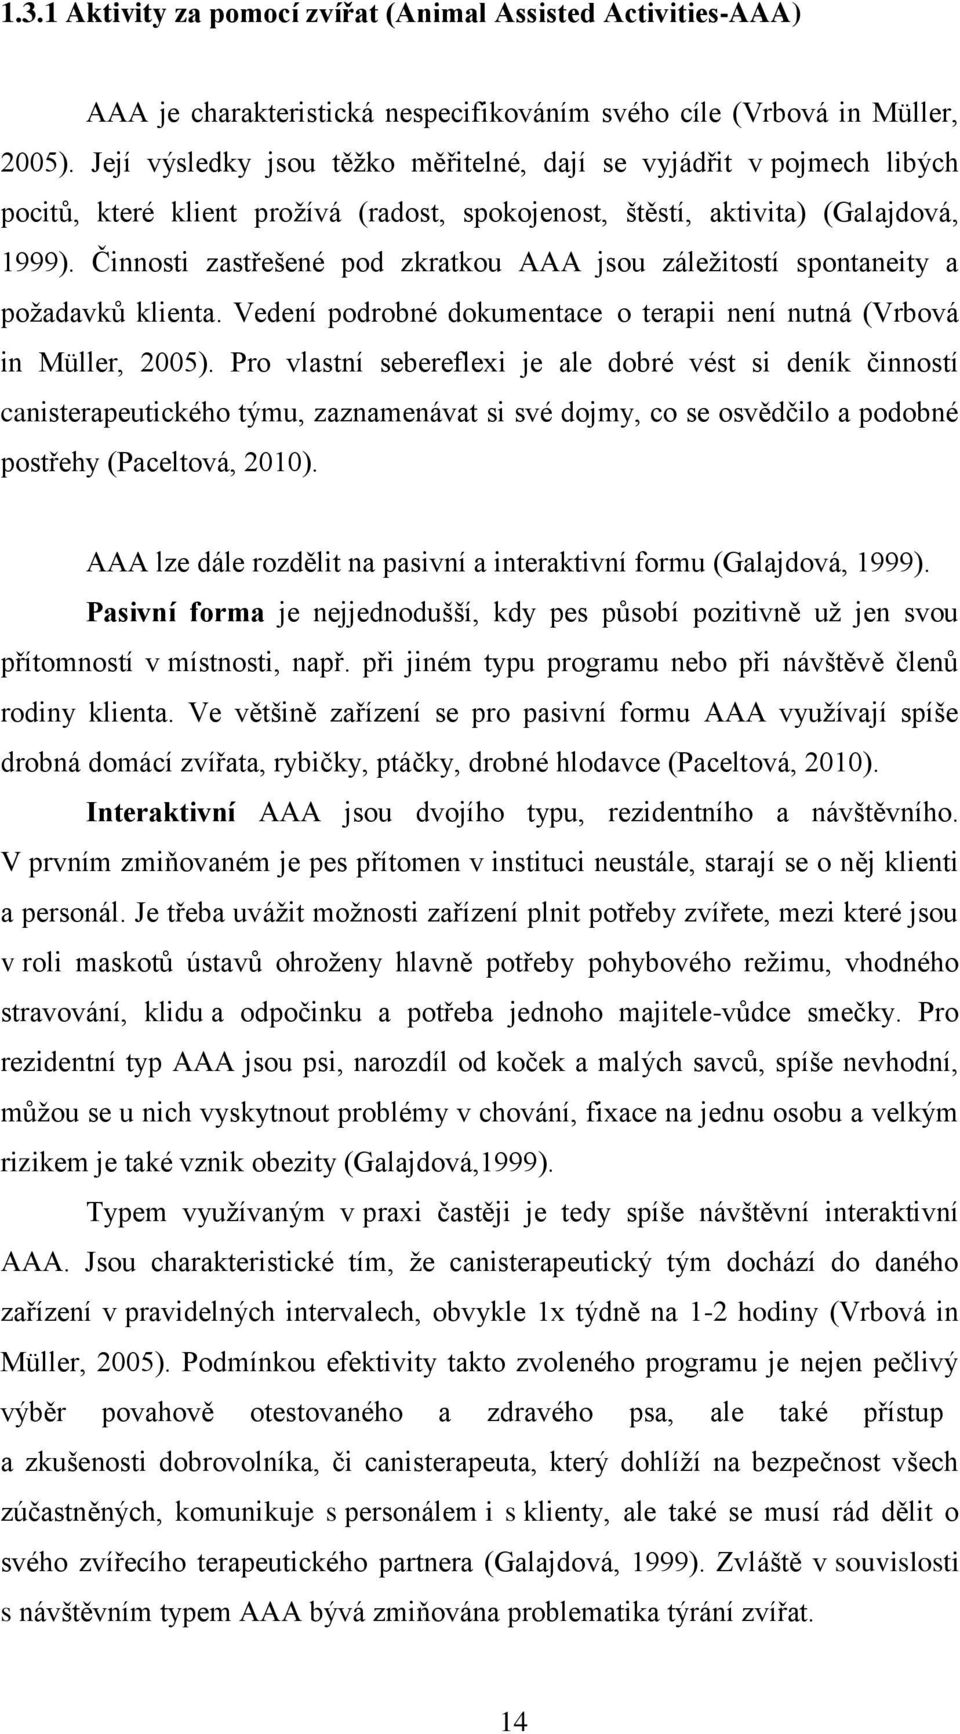 Činnosti zastřešené pod zkratkou AAA jsou záleţitostí spontaneity a poţadavků klienta. Vedení podrobné dokumentace o terapii není nutná (Vrbová in Müller, 2005).